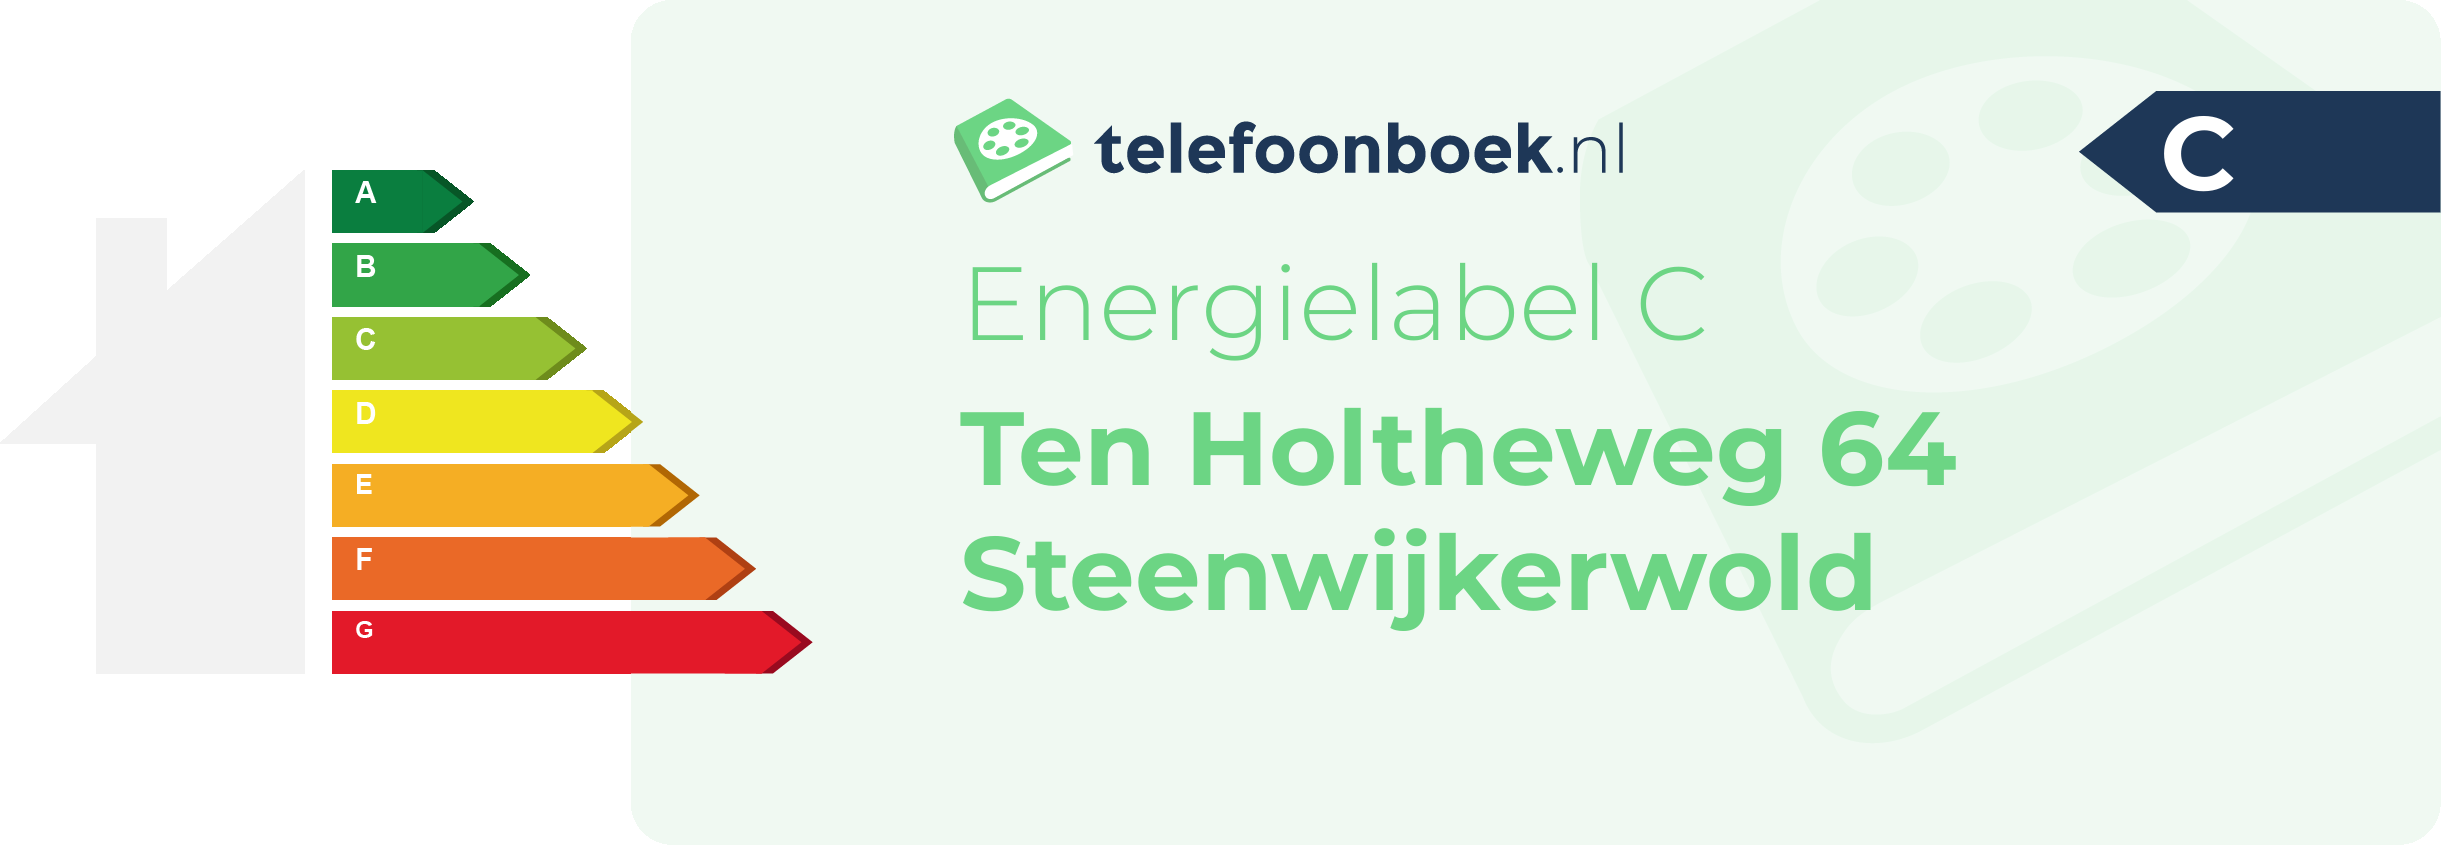 Energielabel Ten Holtheweg 64 Steenwijkerwold